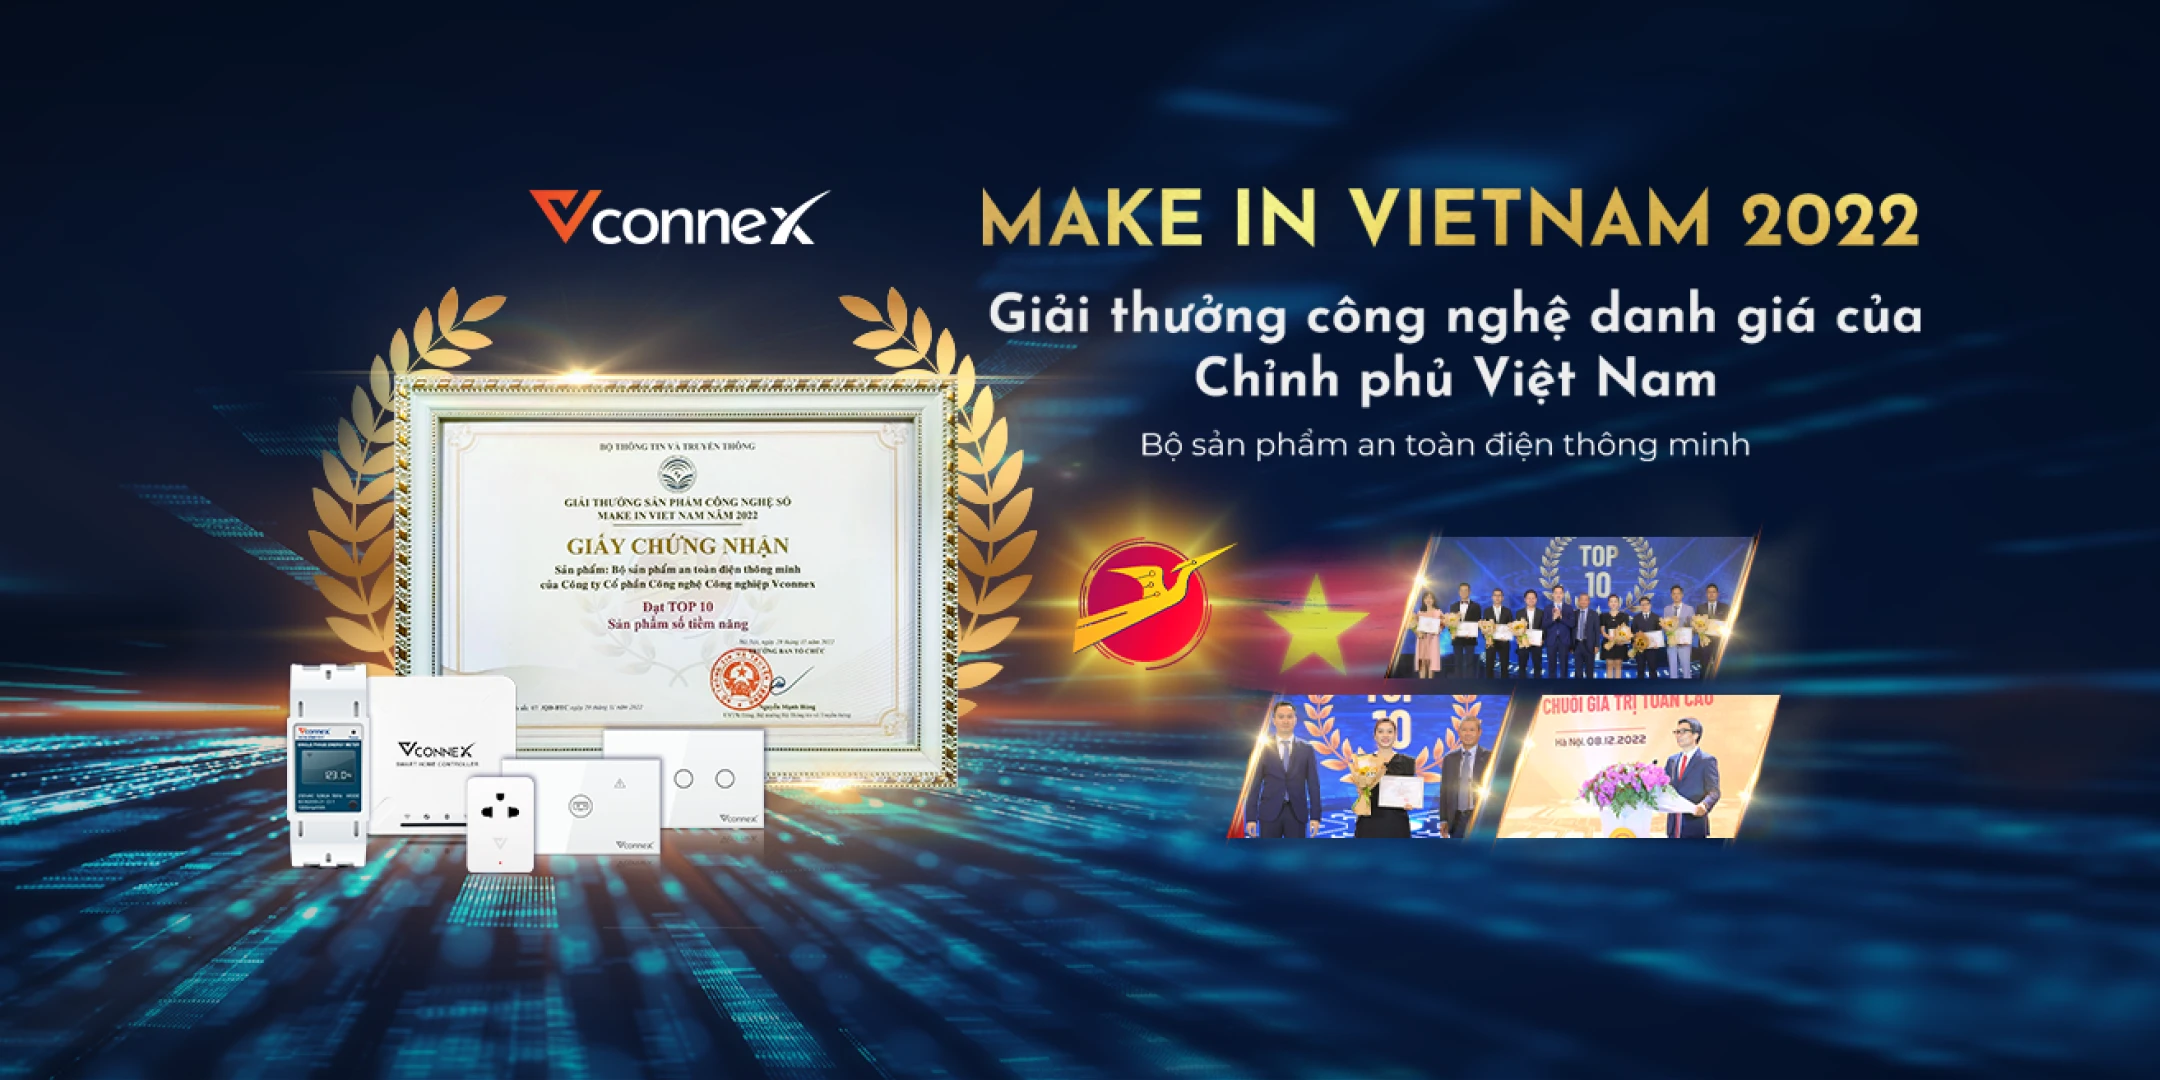 Vconnex-dat-giai-thuong-make-in-vietnam